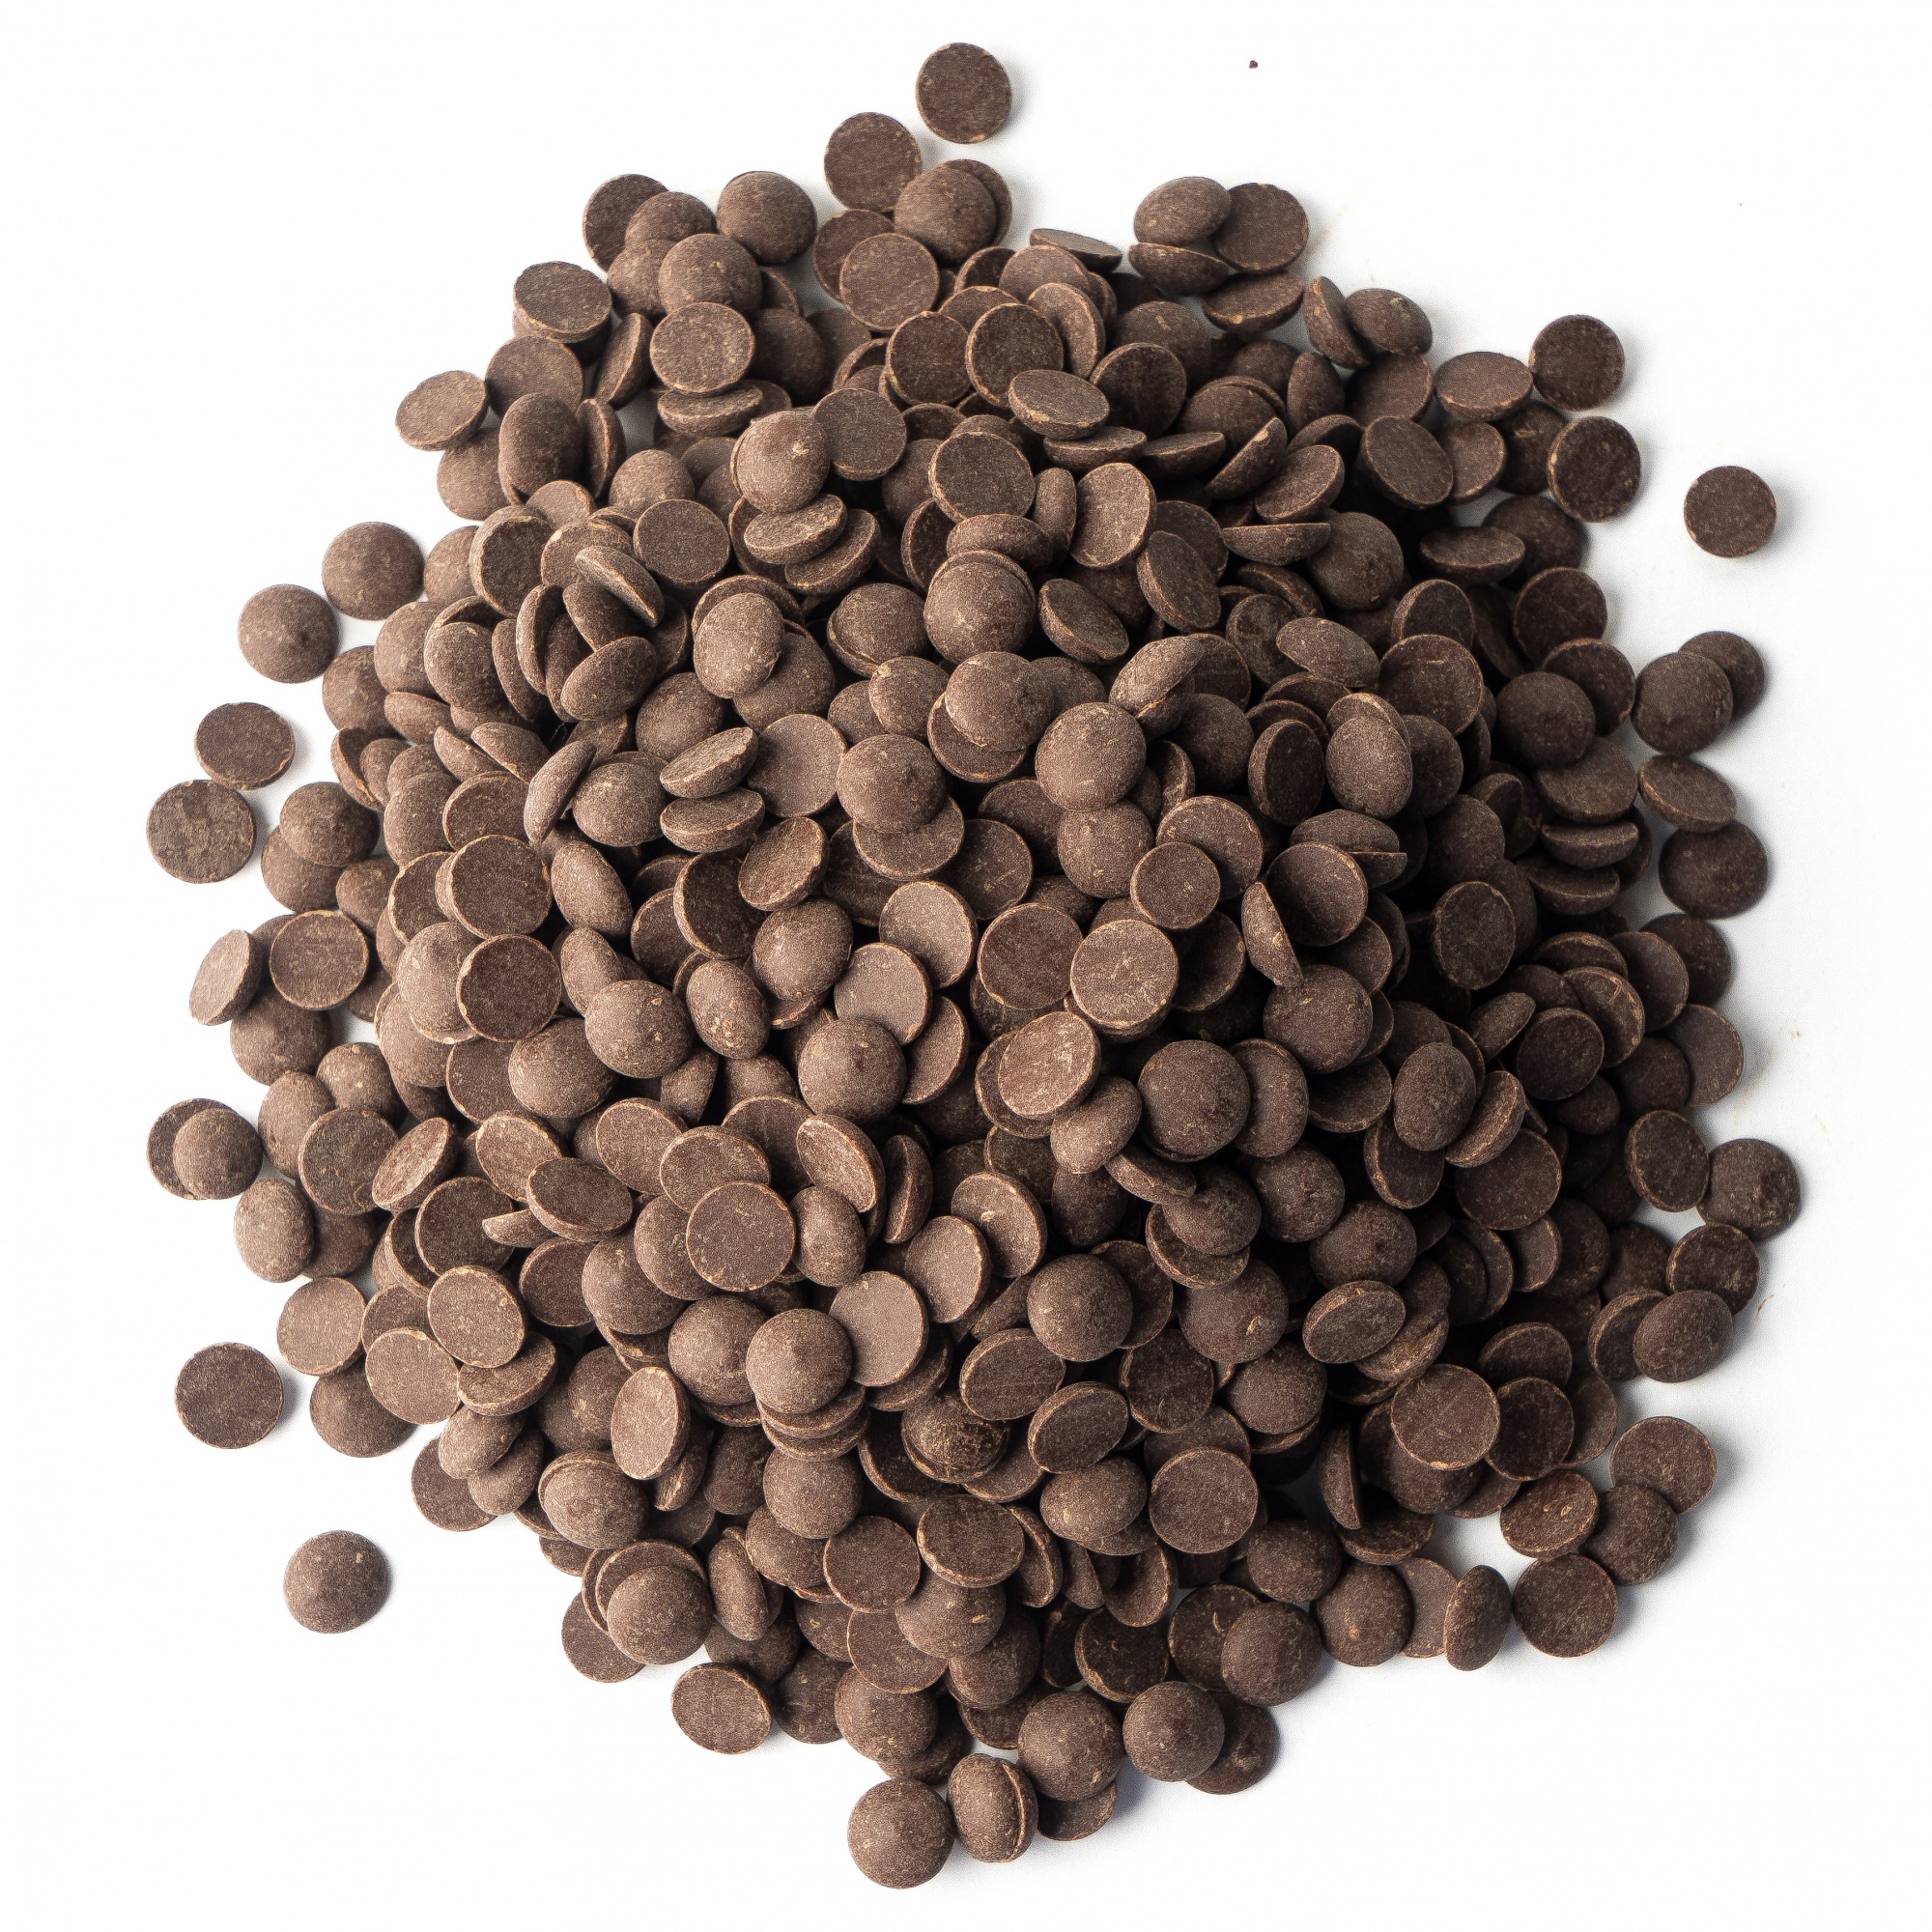 Шоколад тёмный 54,5%, №811, Callebaut, Бельгия, 500 г  | Фото — Магазин Andy Chef  1